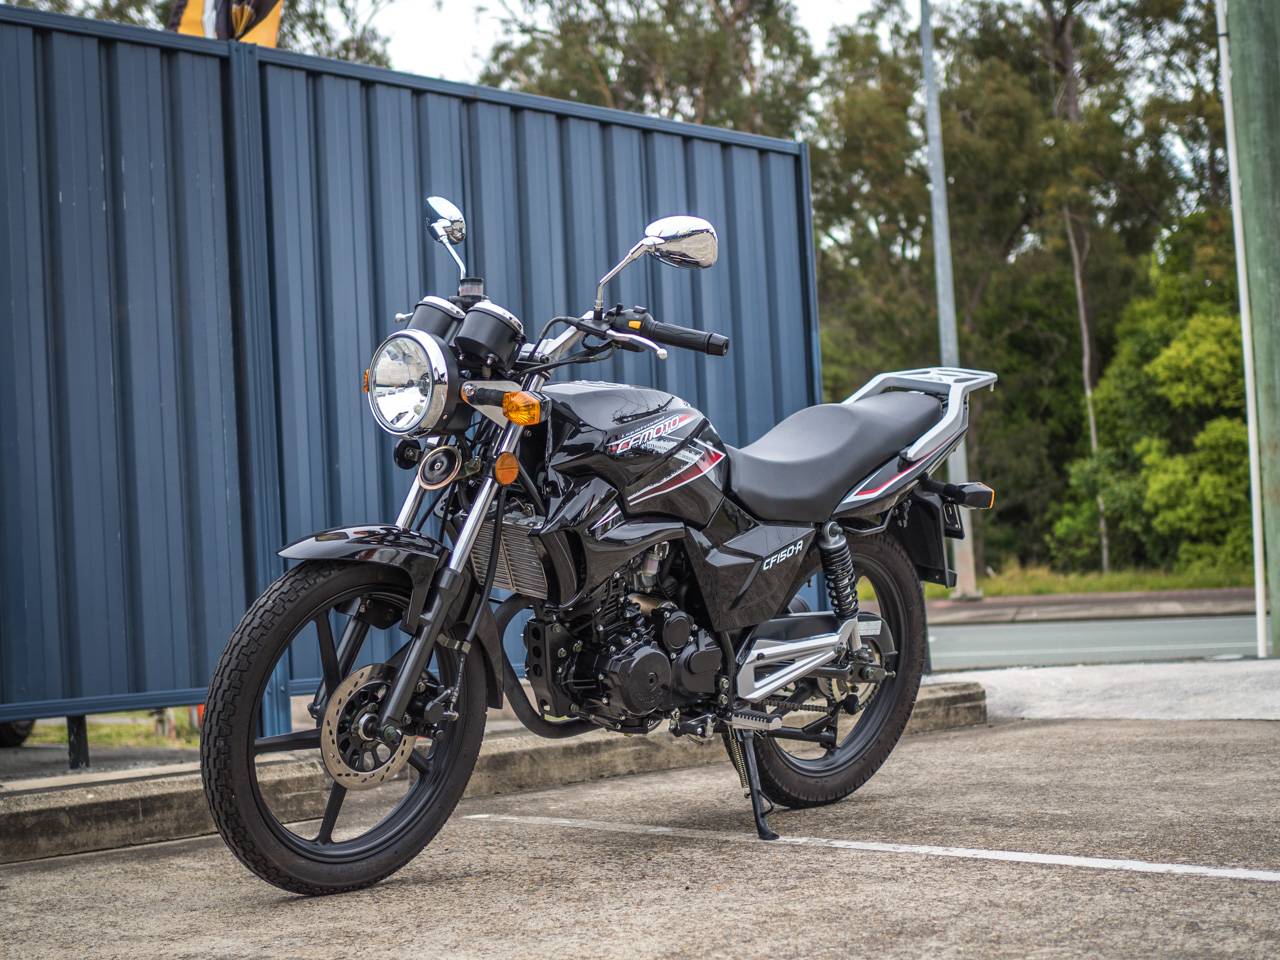 Мотоцикл cf-moto 150nk 2015: объясняем основательно